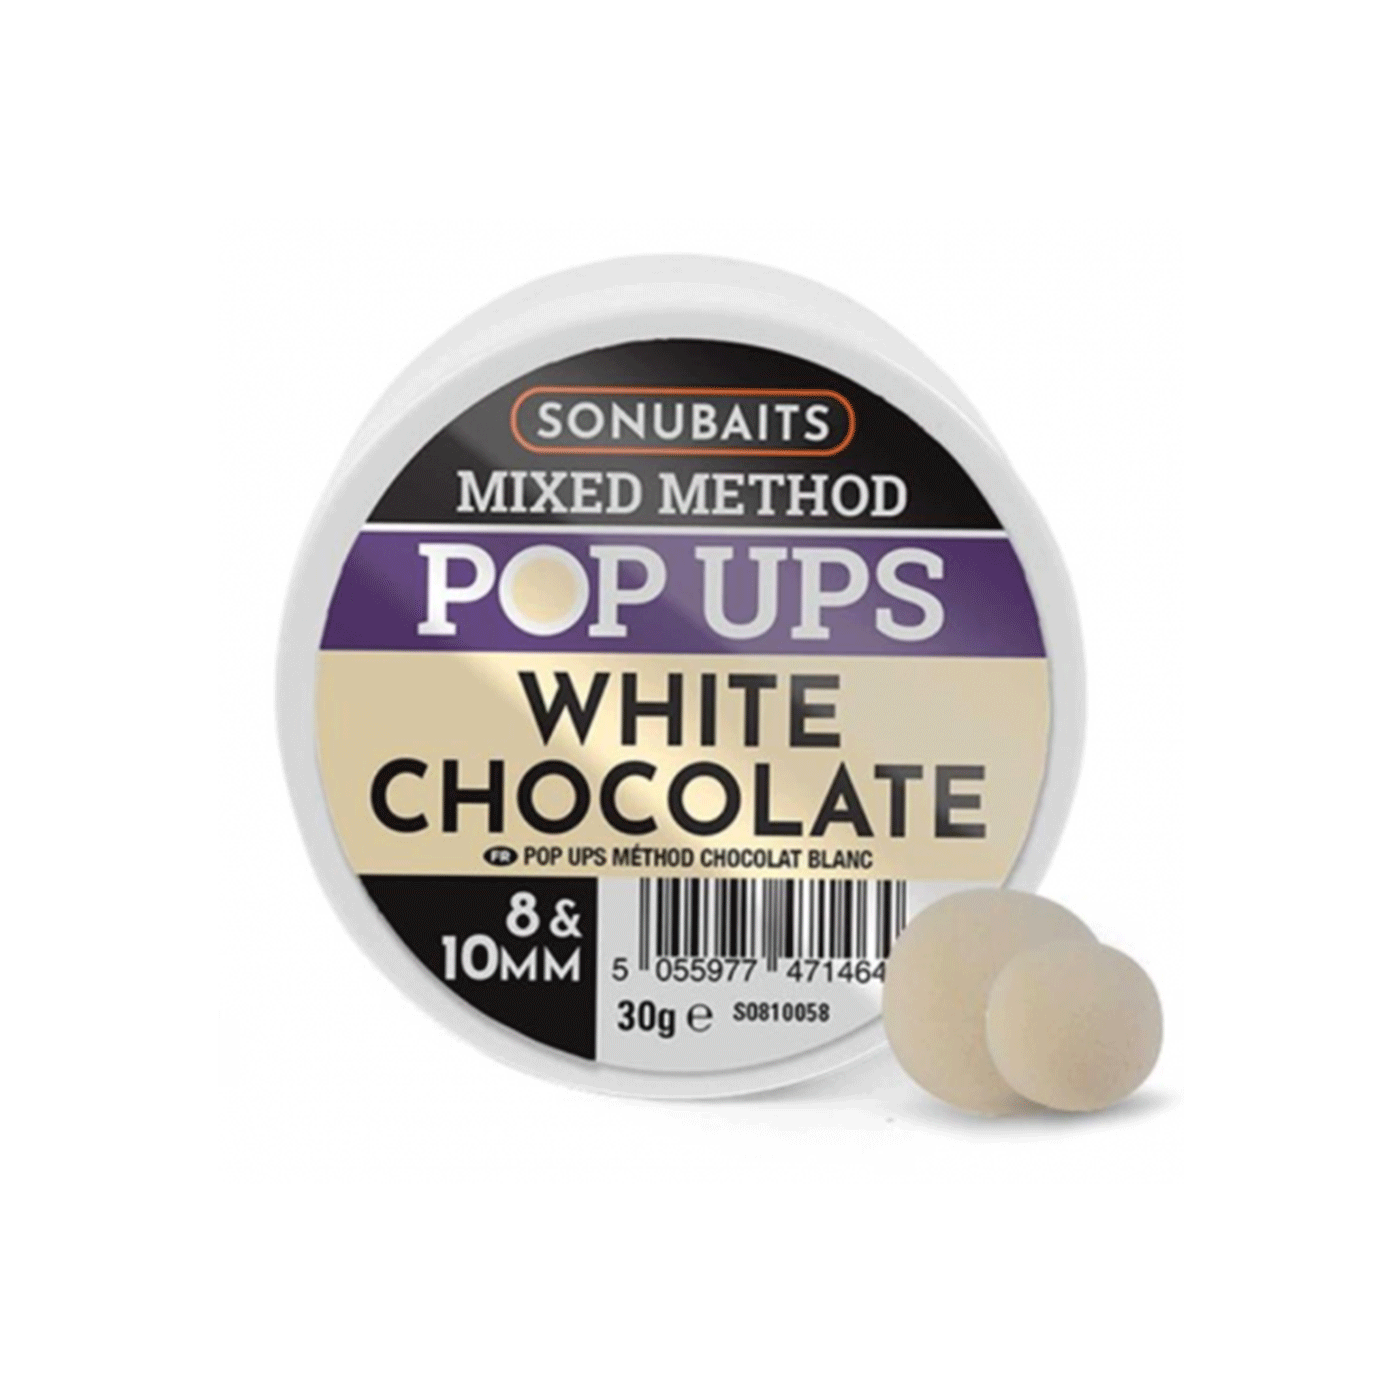 SONUBAITS - MIXED METHOD POP UPS WHITE CHOCOLATE 8 &amp; 10MM 30g